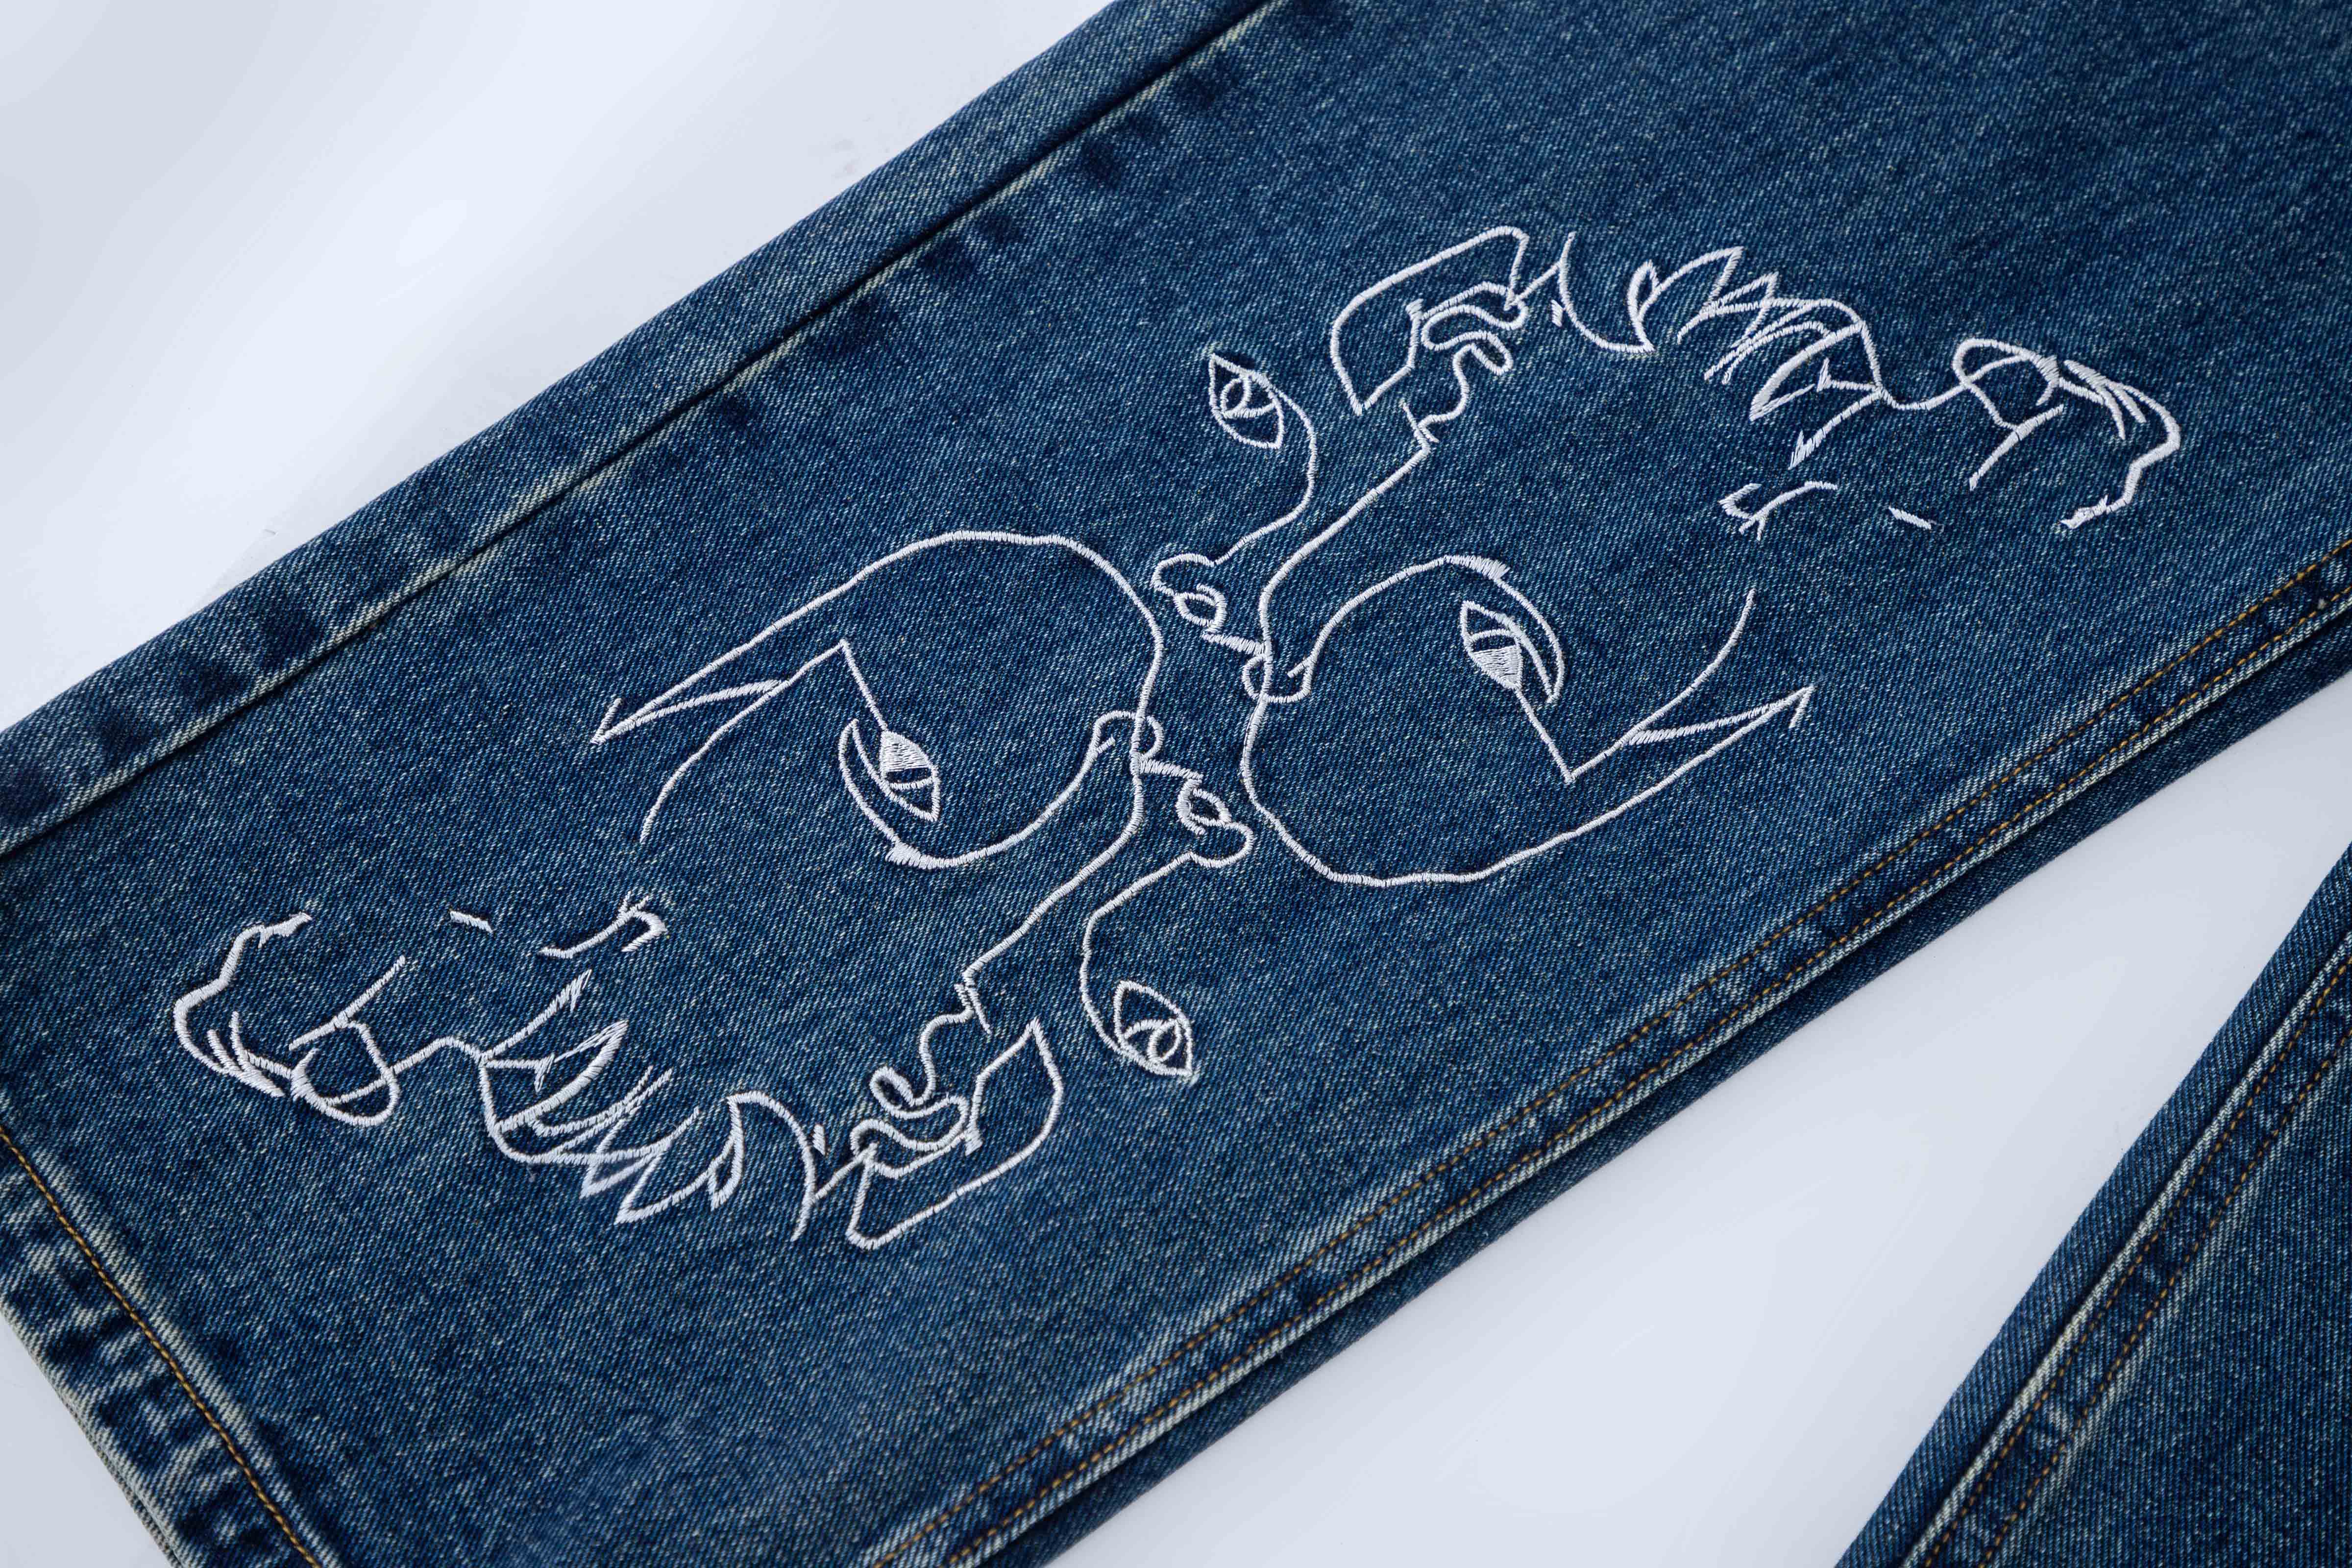 'Retro Lines' Jeans - Santo 